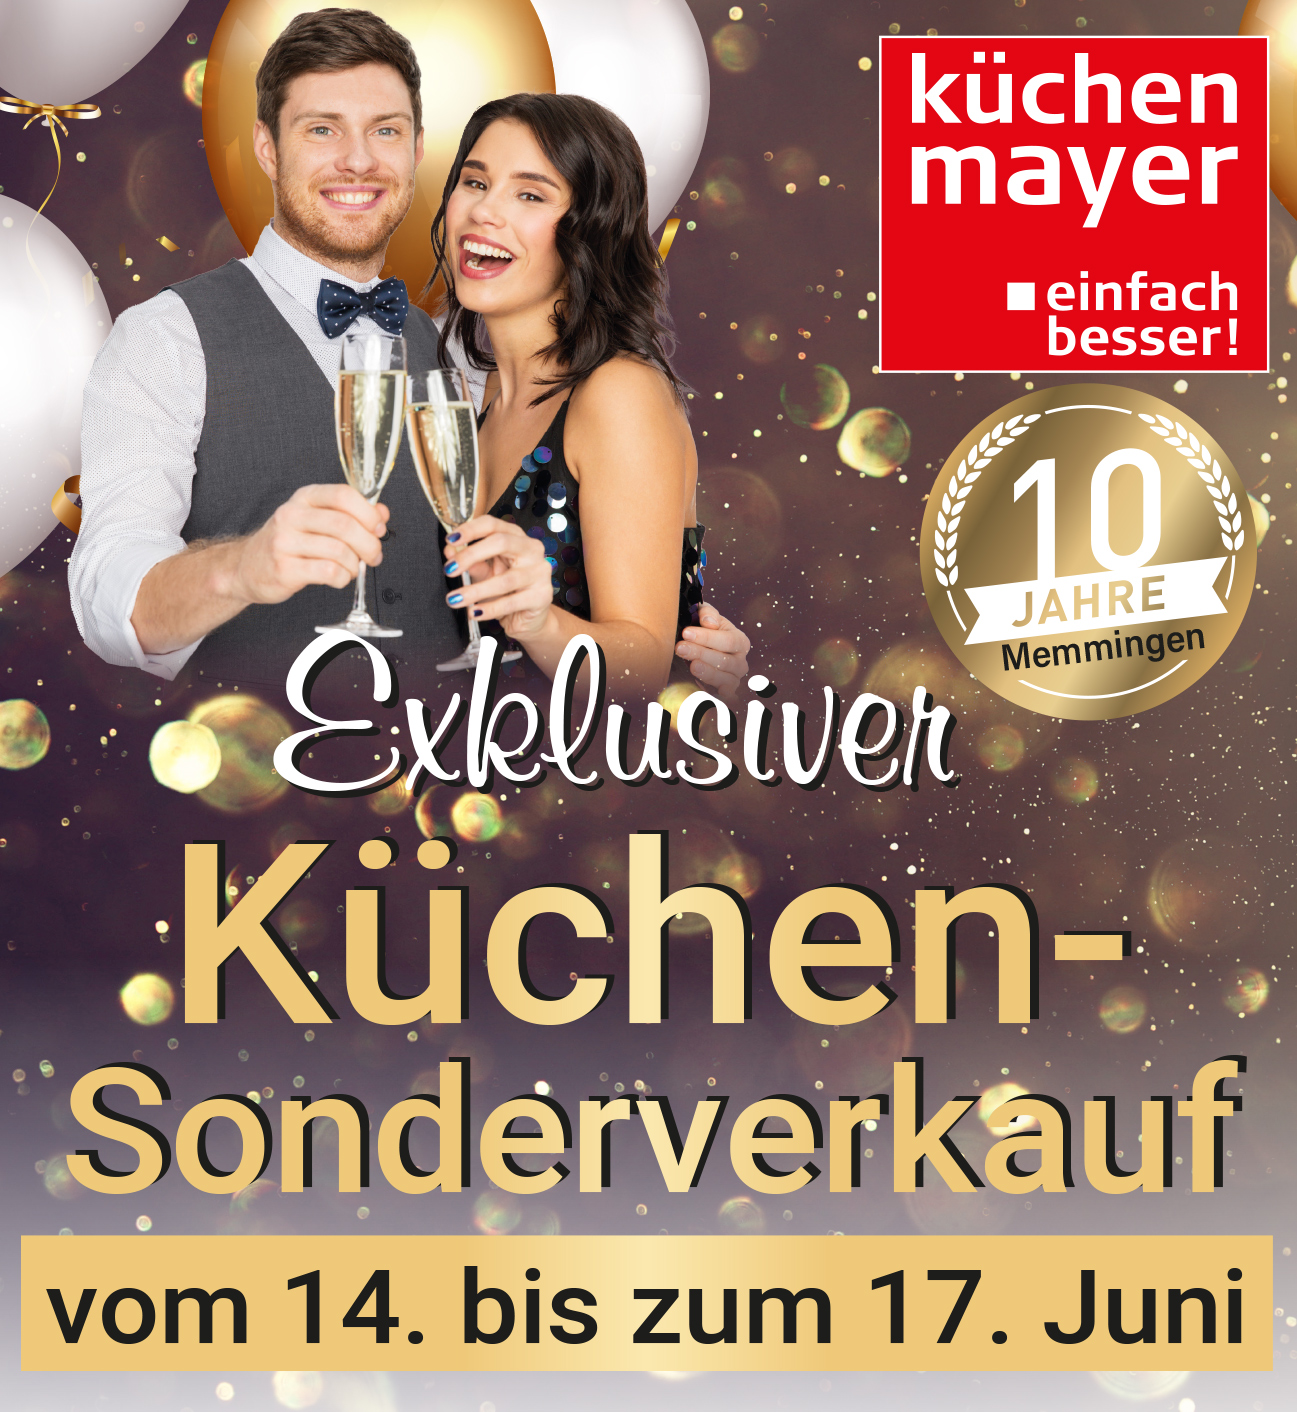 Exklusiver Küchen-Sonderverkauf bei Küchen Mayer in Memmingen - nur vom 14. bis zum 17. Juni